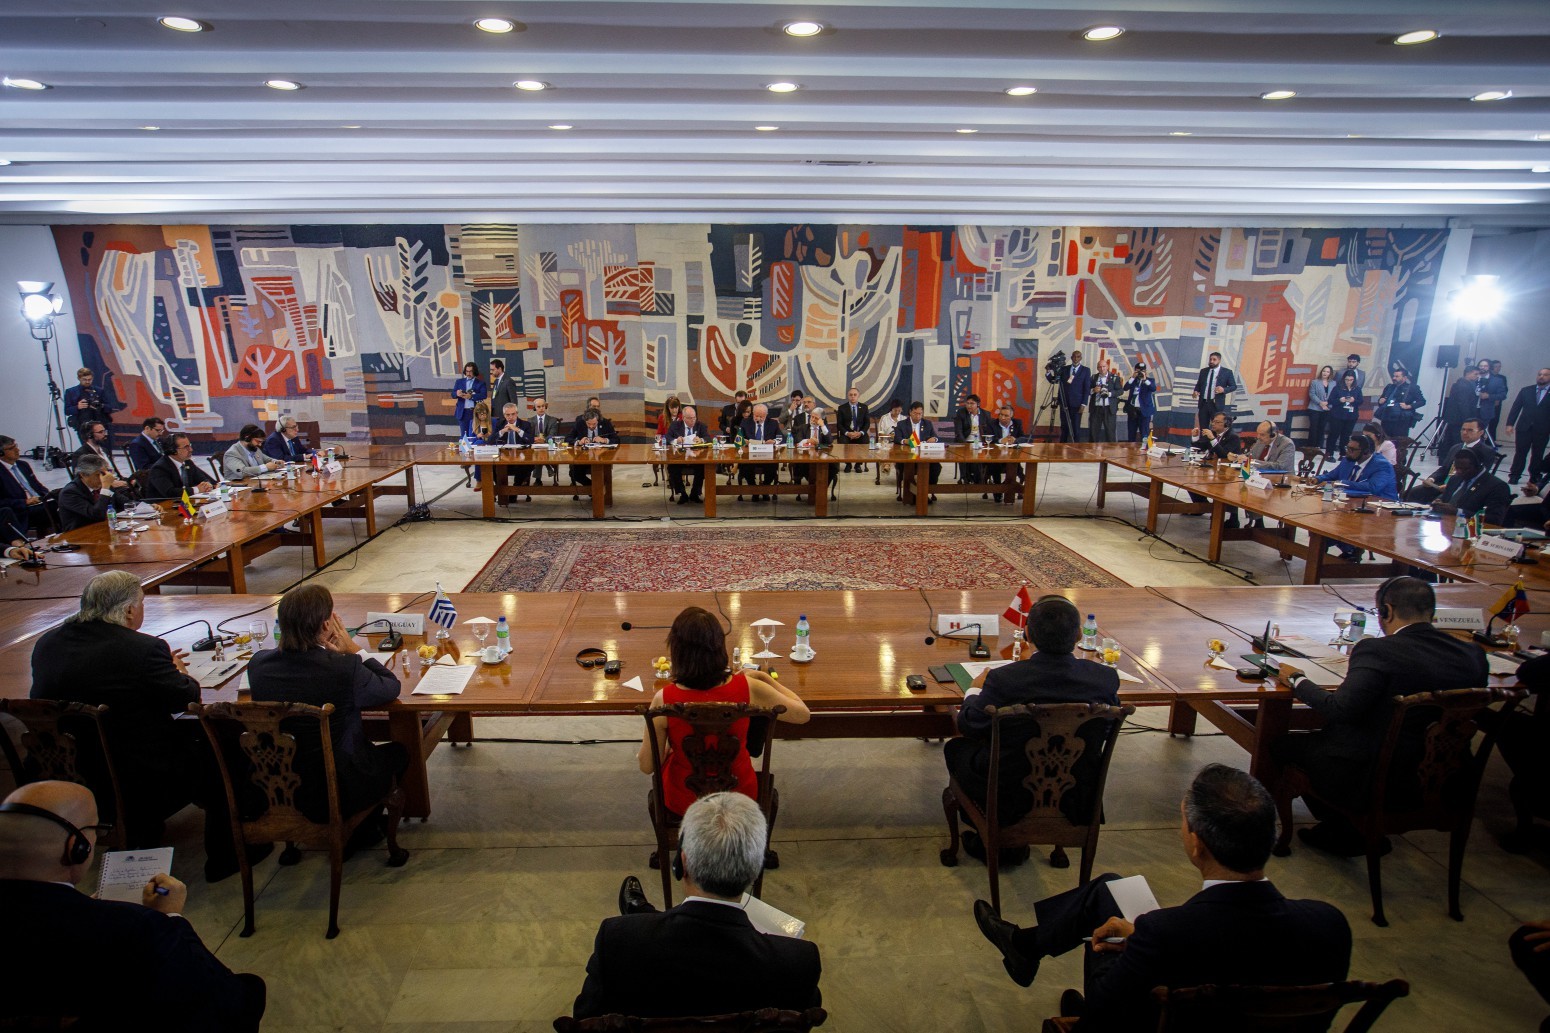 O Palácio do Itamaraty sediou o encontro de chefes de Estado sul-americanos — Foto: Brenno Carvalho